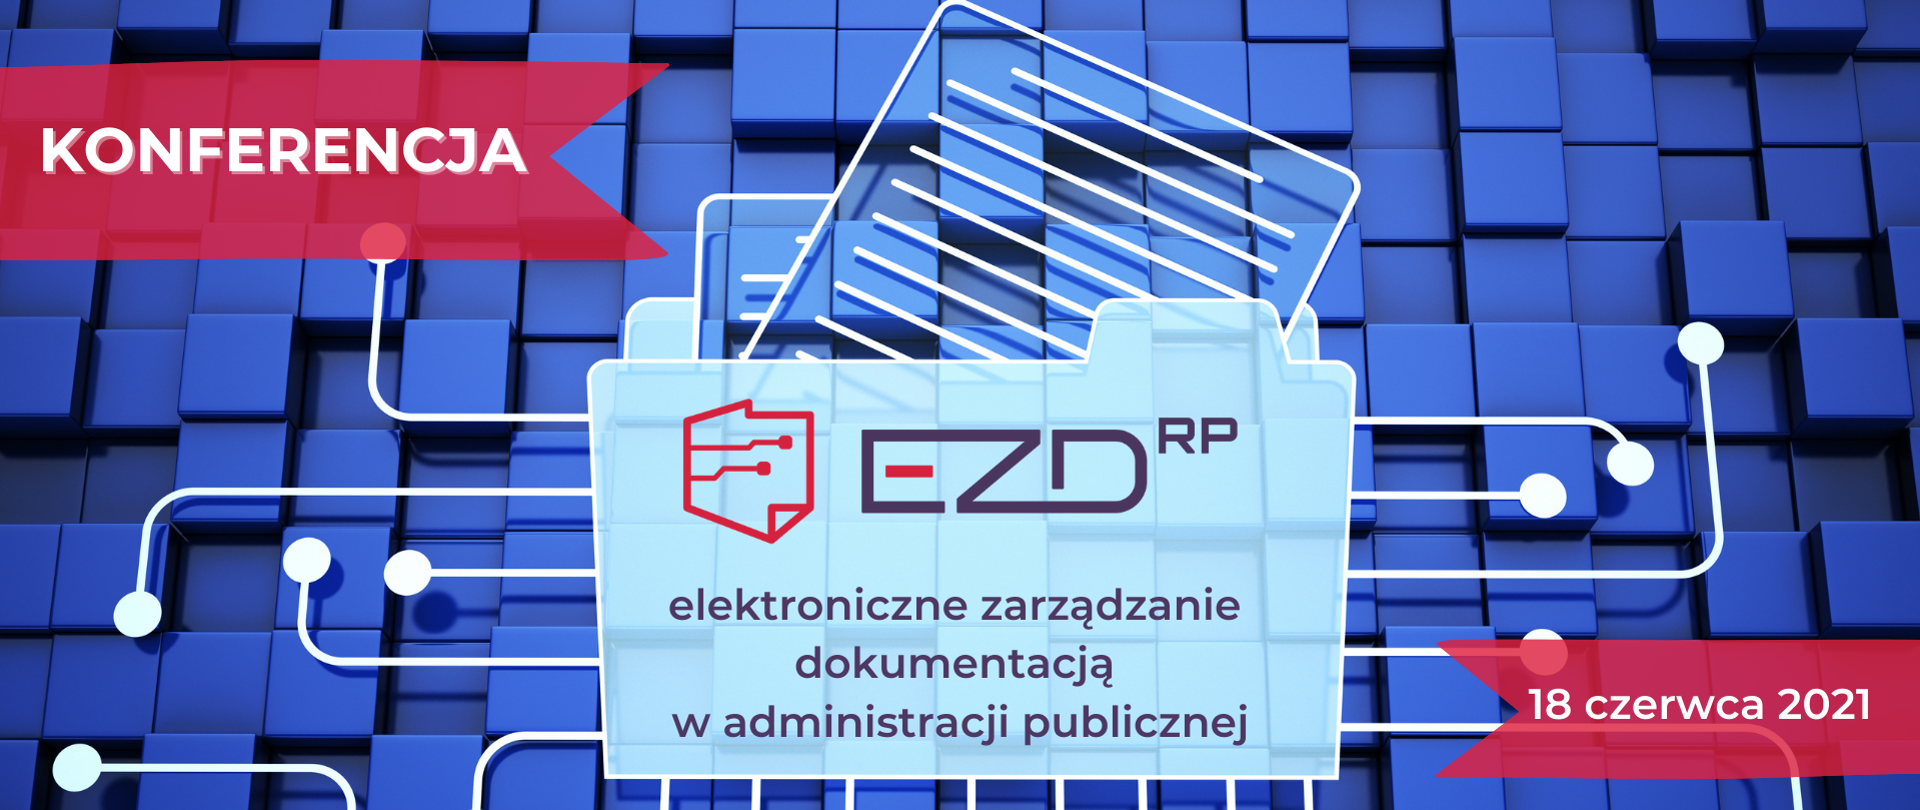 Napis elektroniczne zarządzanie dokumenracją w administracji publicznej